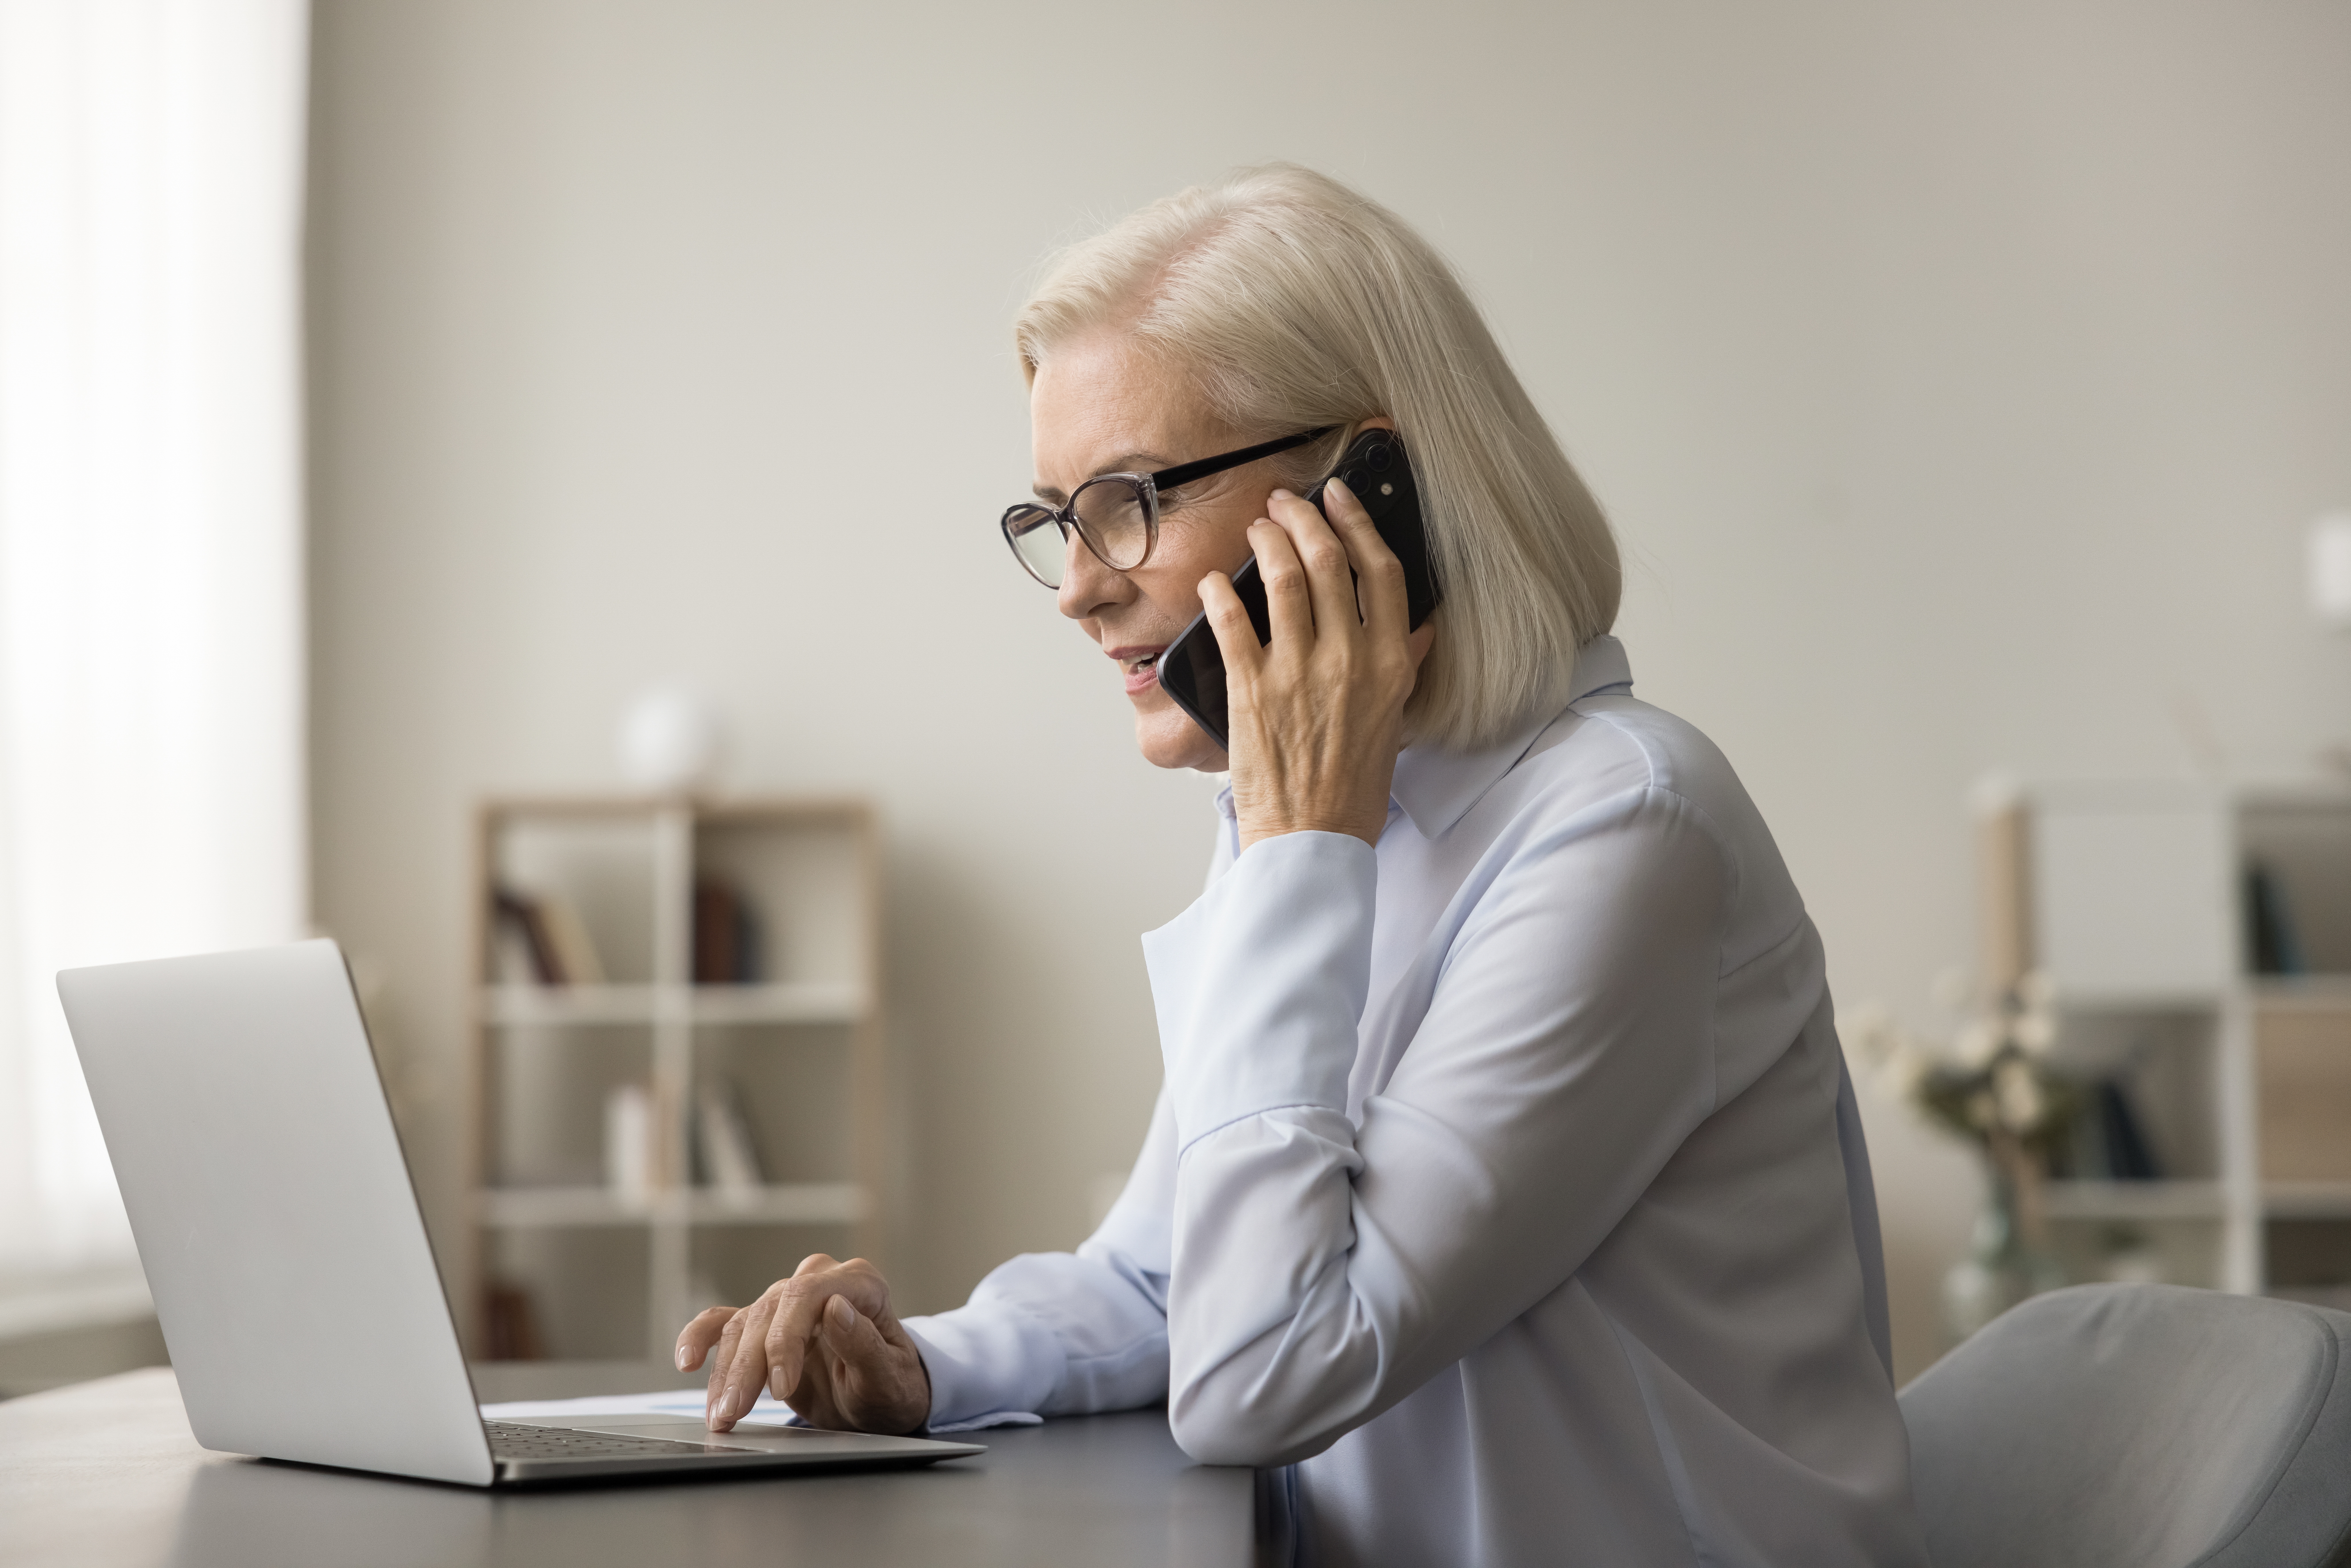 Femme parlant au téléphone devant un ordinateur portable | Source : Shutterstock